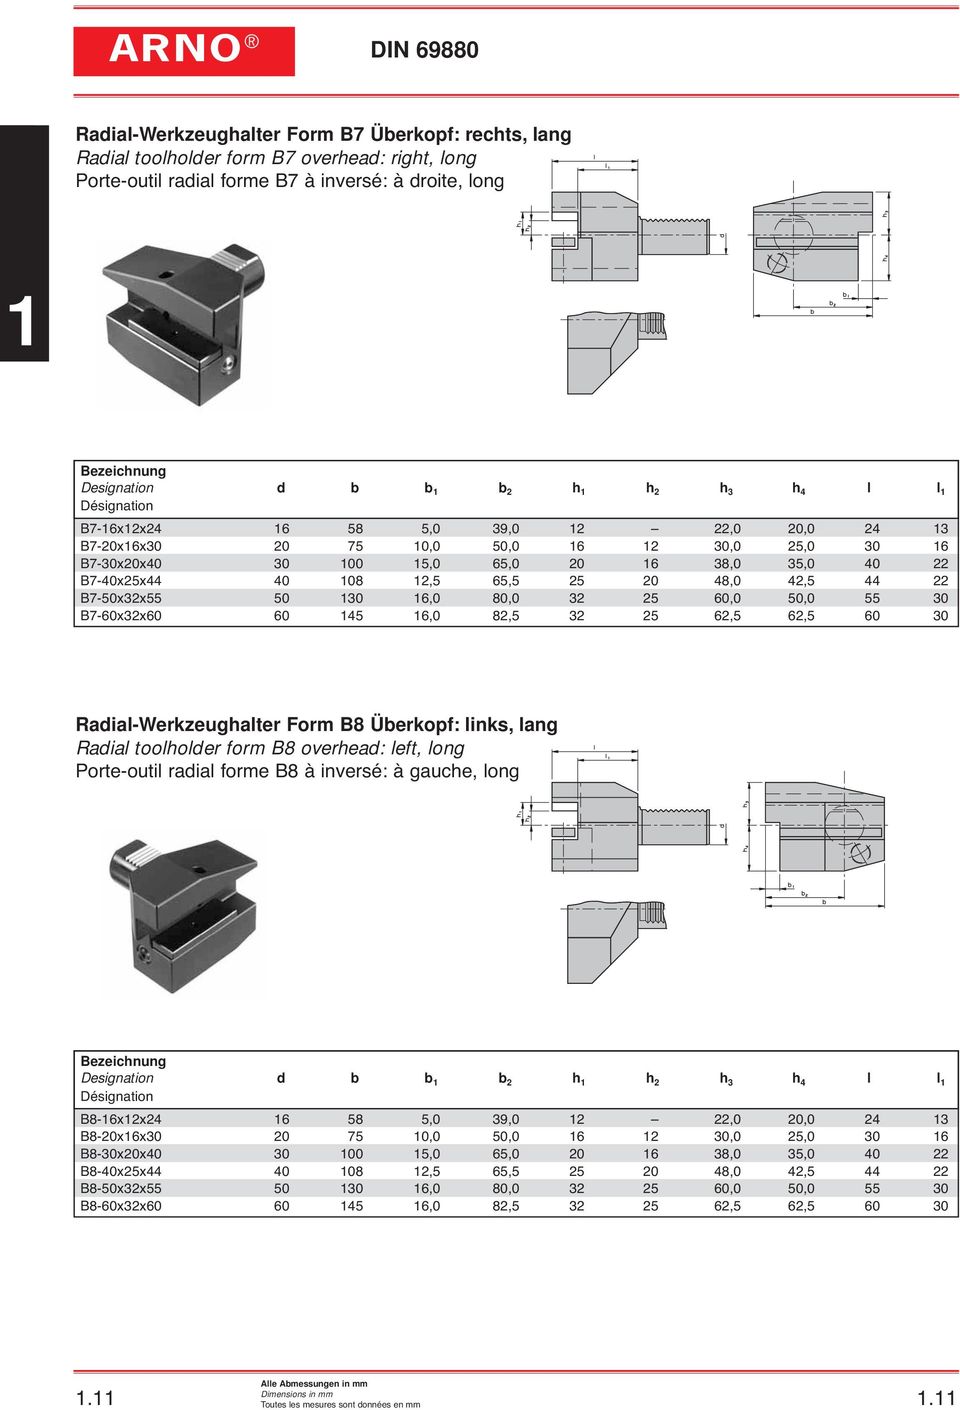 Werkzeughalter VDI DIN 69880 Form A1 für Sonderausführung rechteckig 